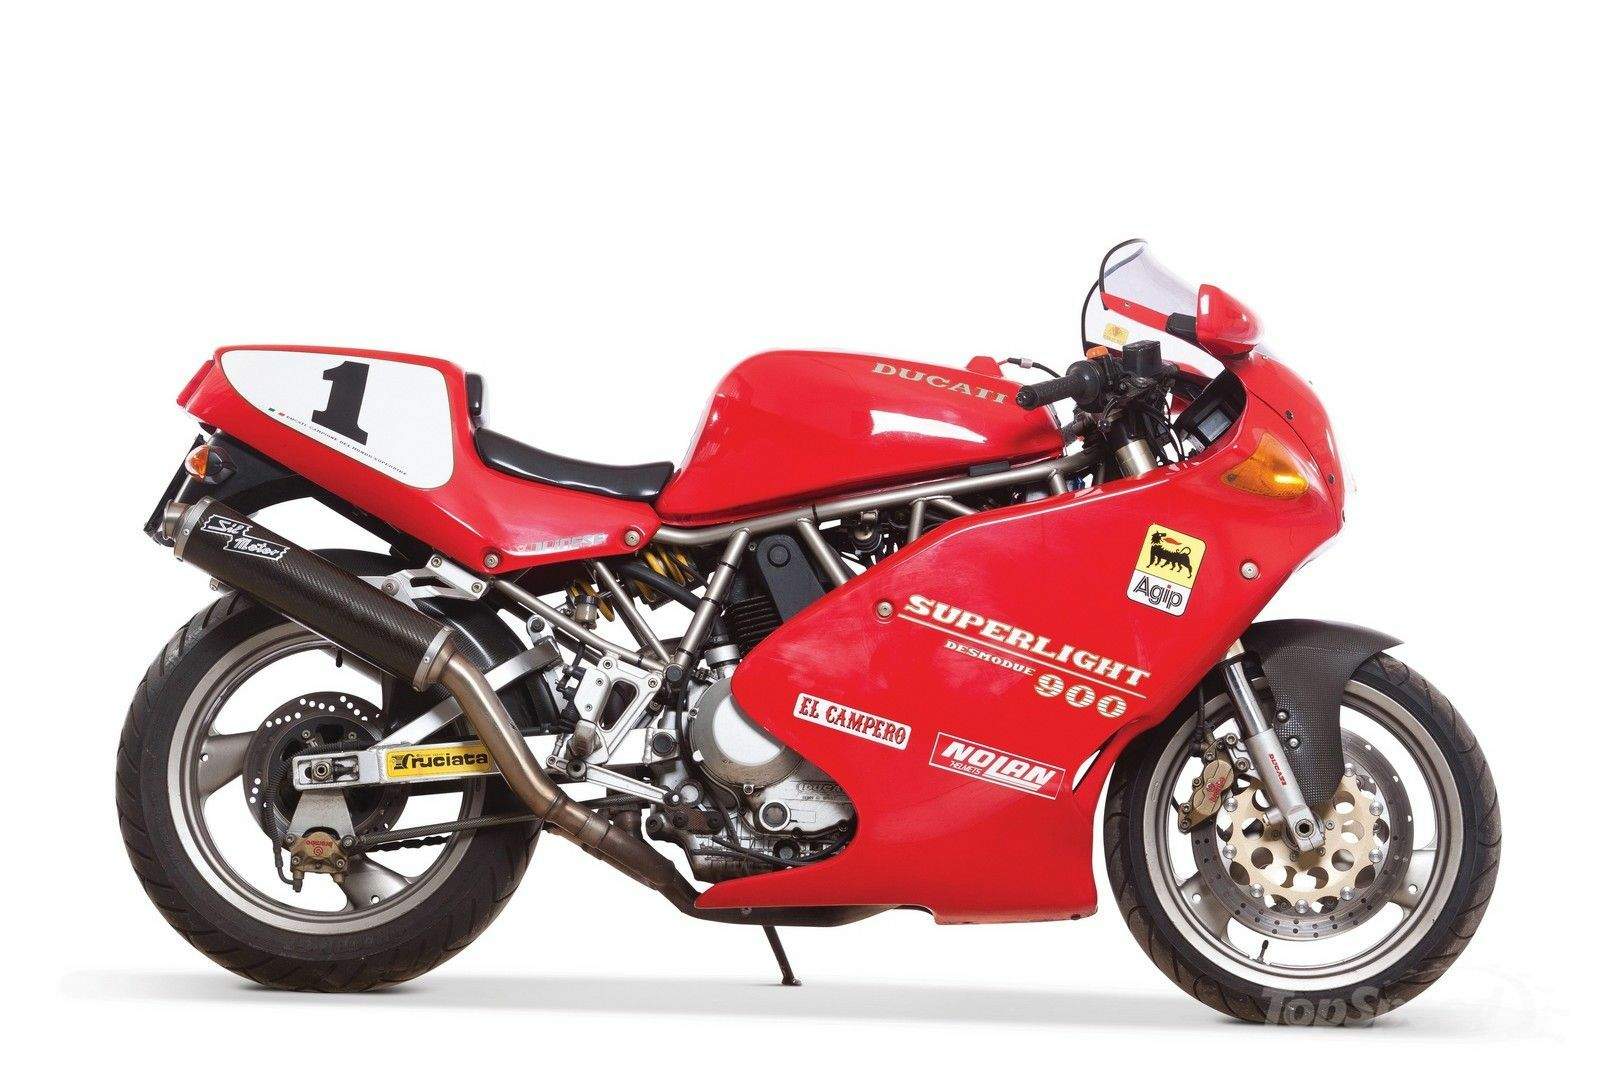 Мотоцикл Ducati 900SL Superlight 1993